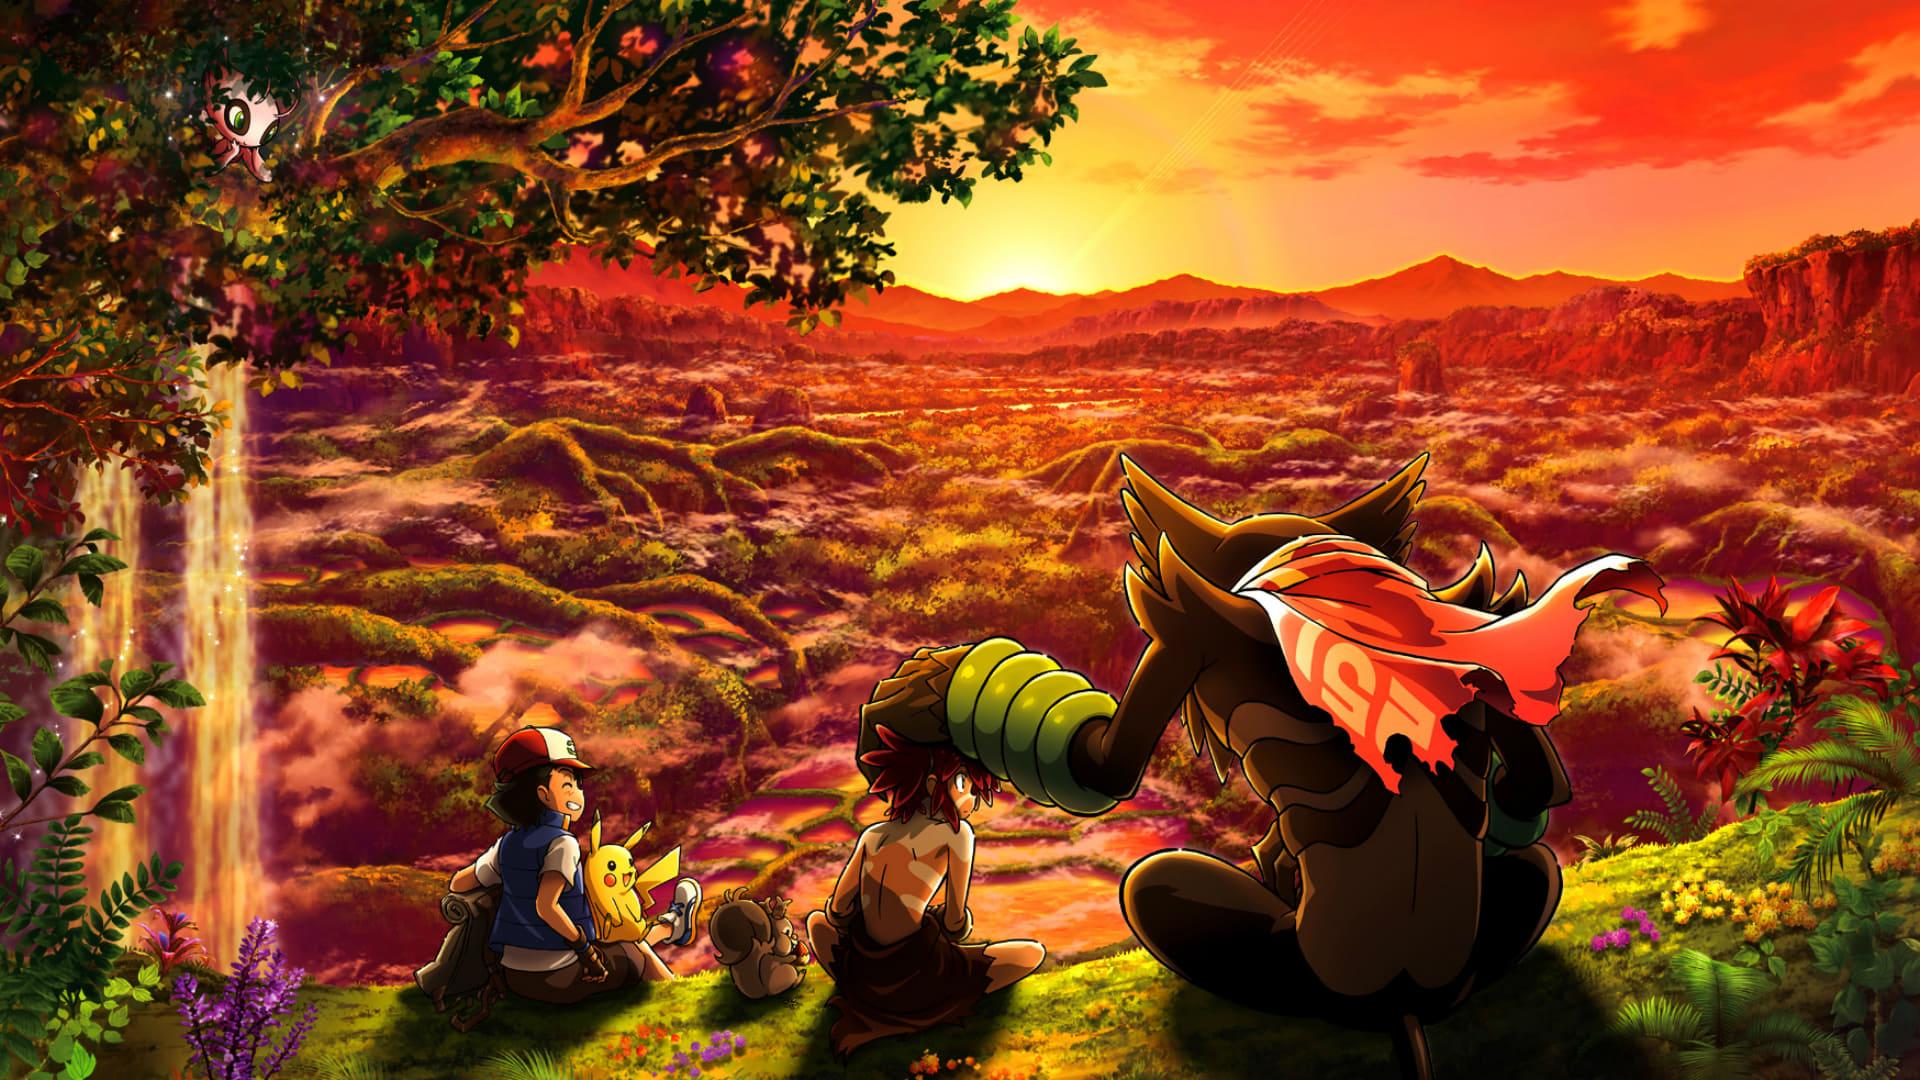 Pokémon the Movie: Secrets of the Jungle backdrop